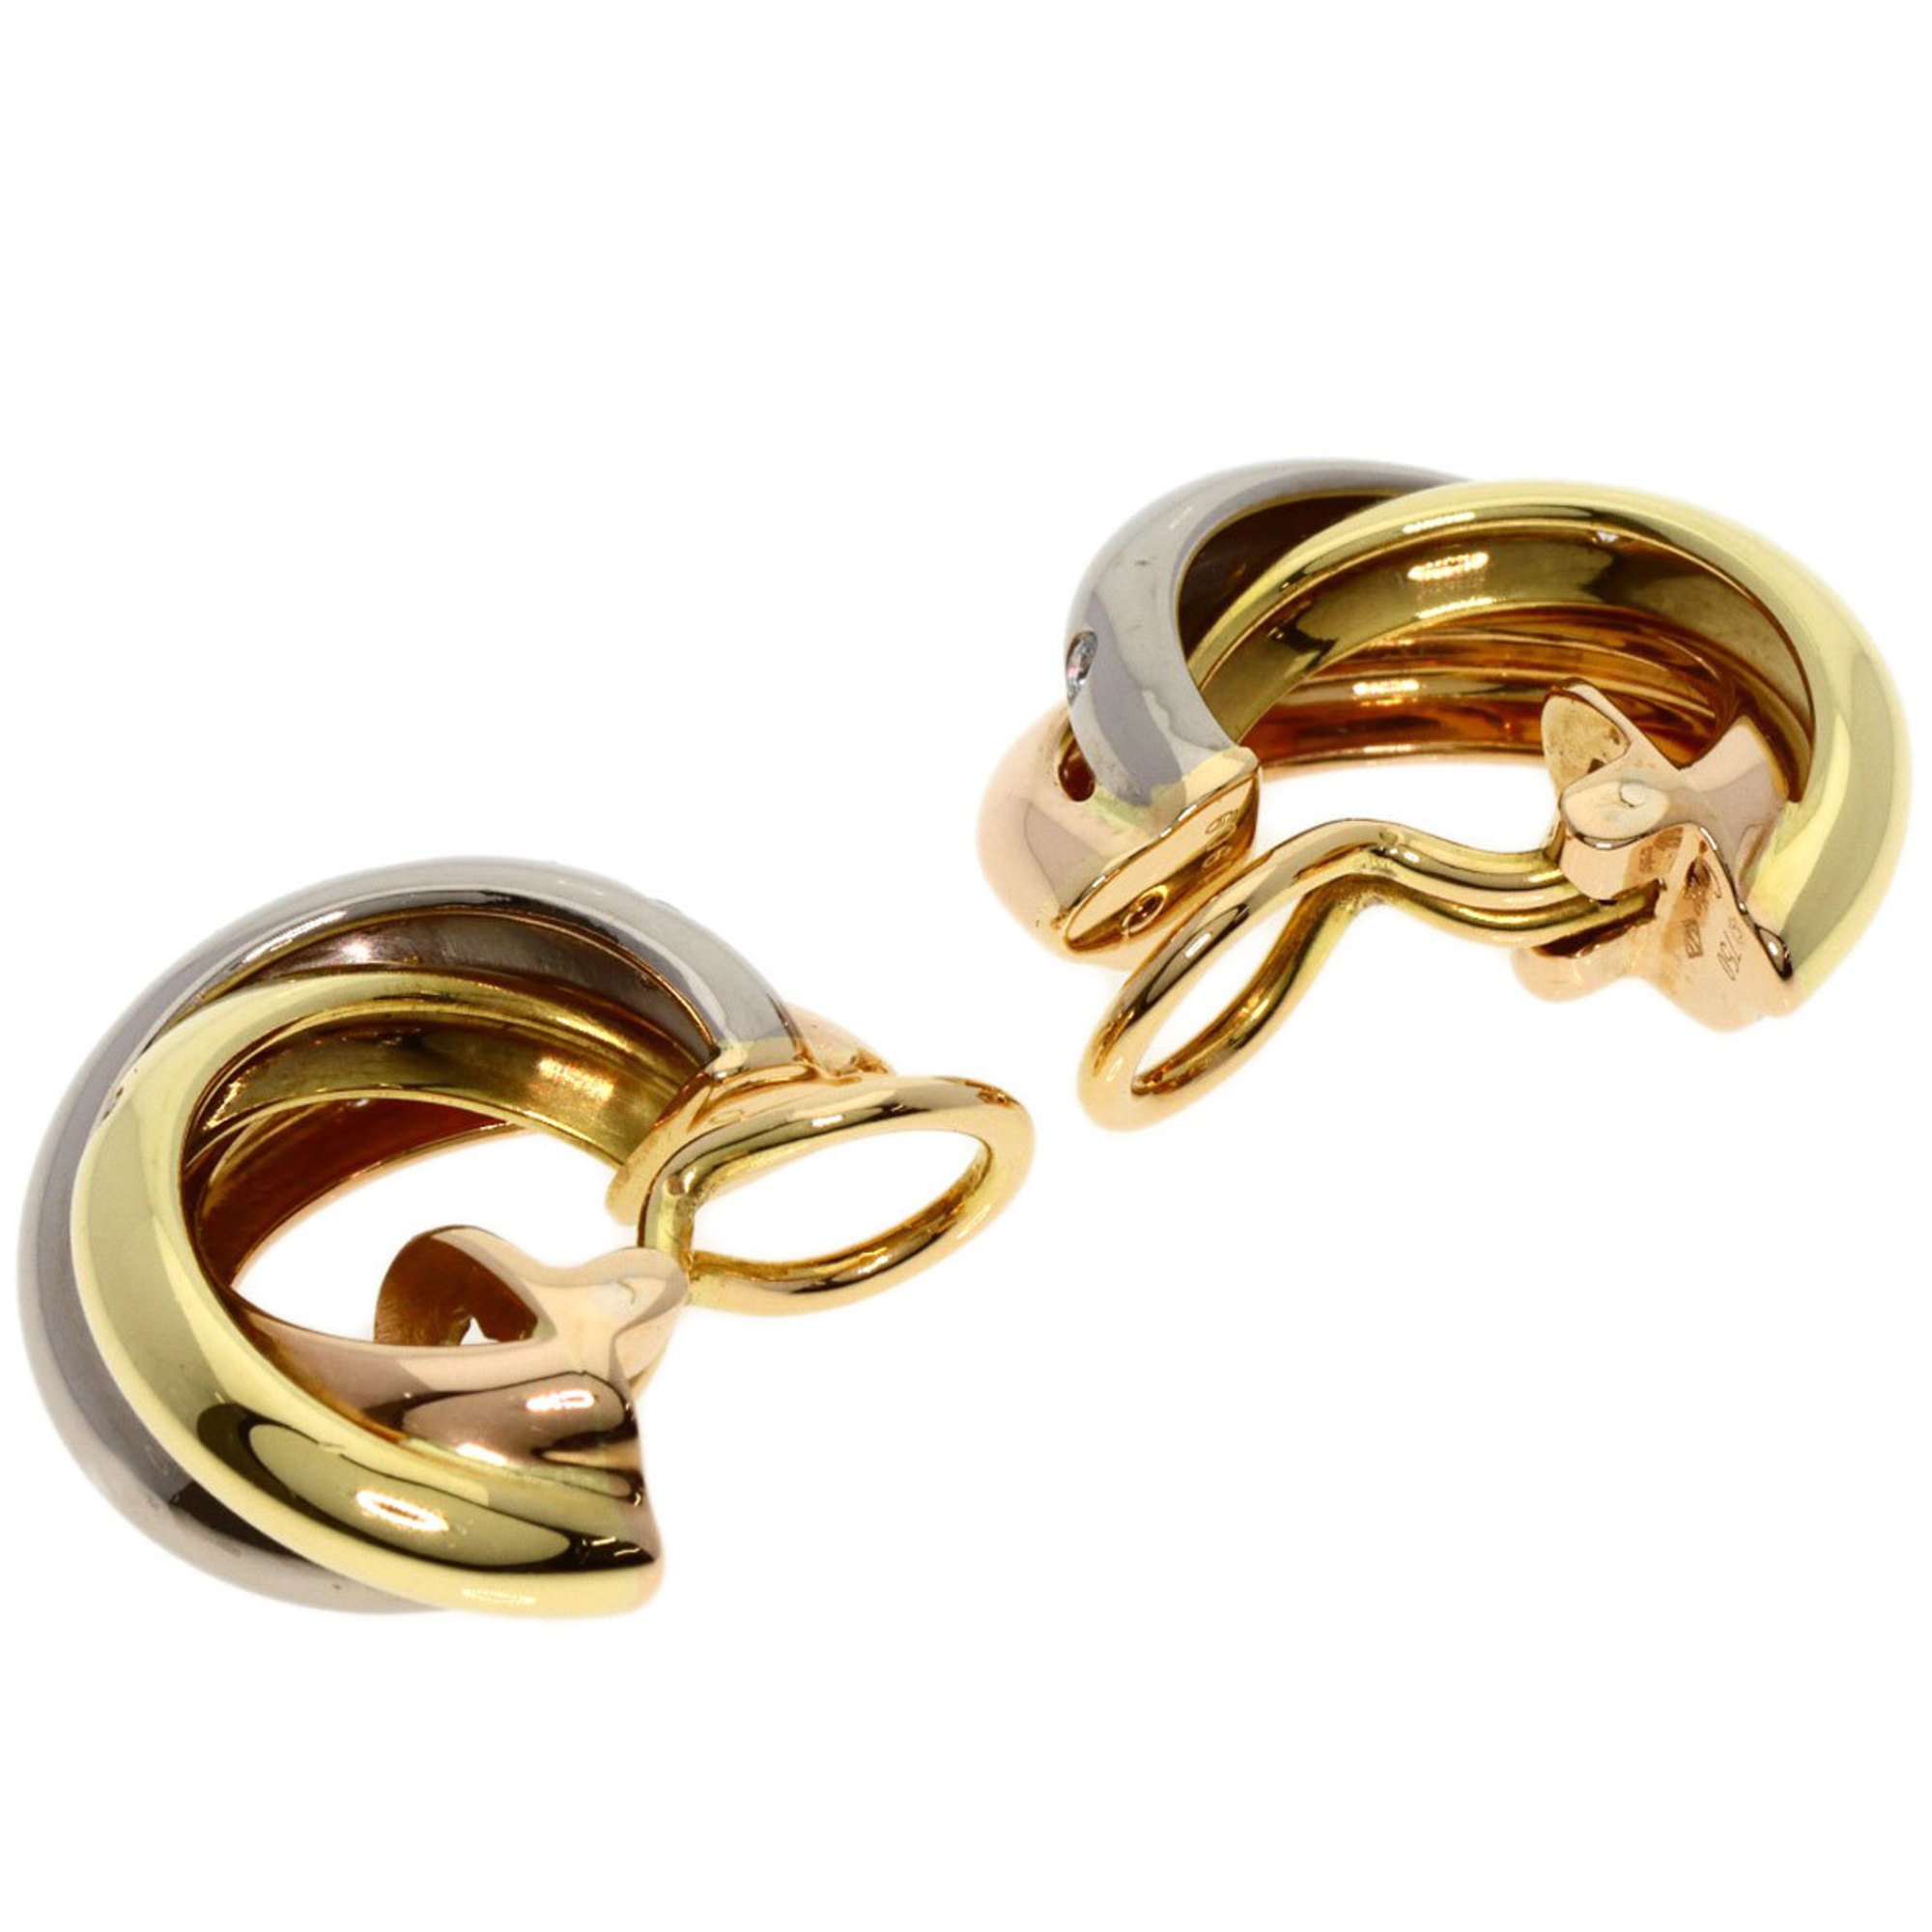 Cartier Trinity Diamond Earrings K18 Yellow Gold/K18WG/K18PG Women's CARTIER